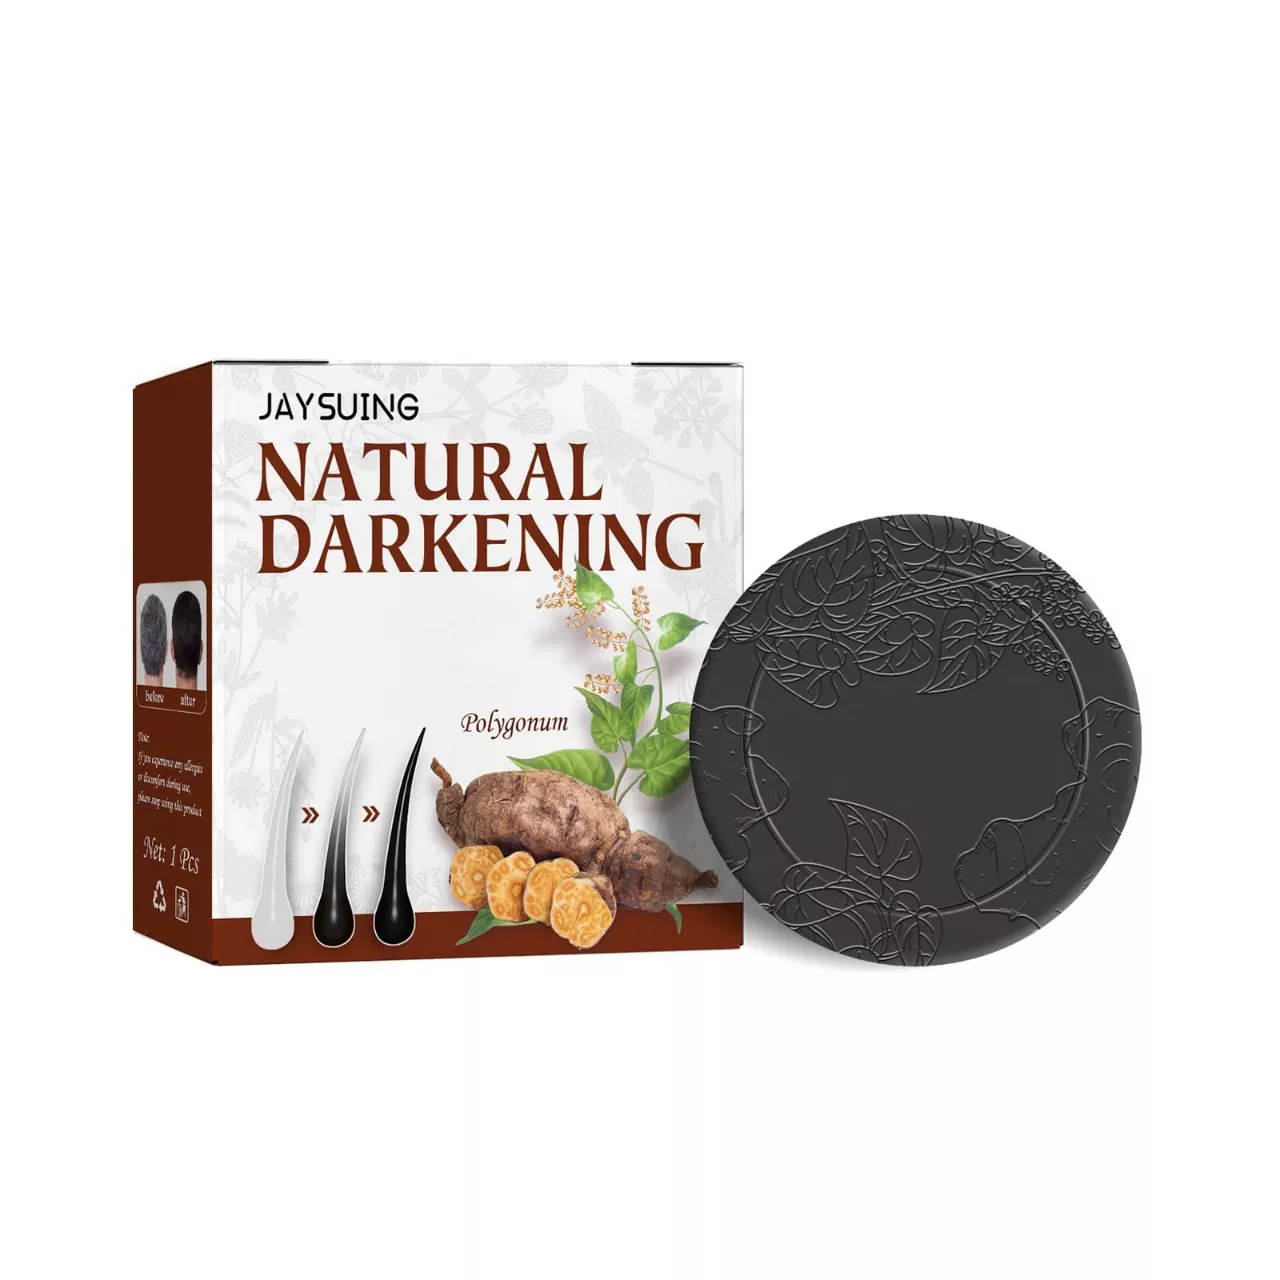 'Natural Darkening' rasmi